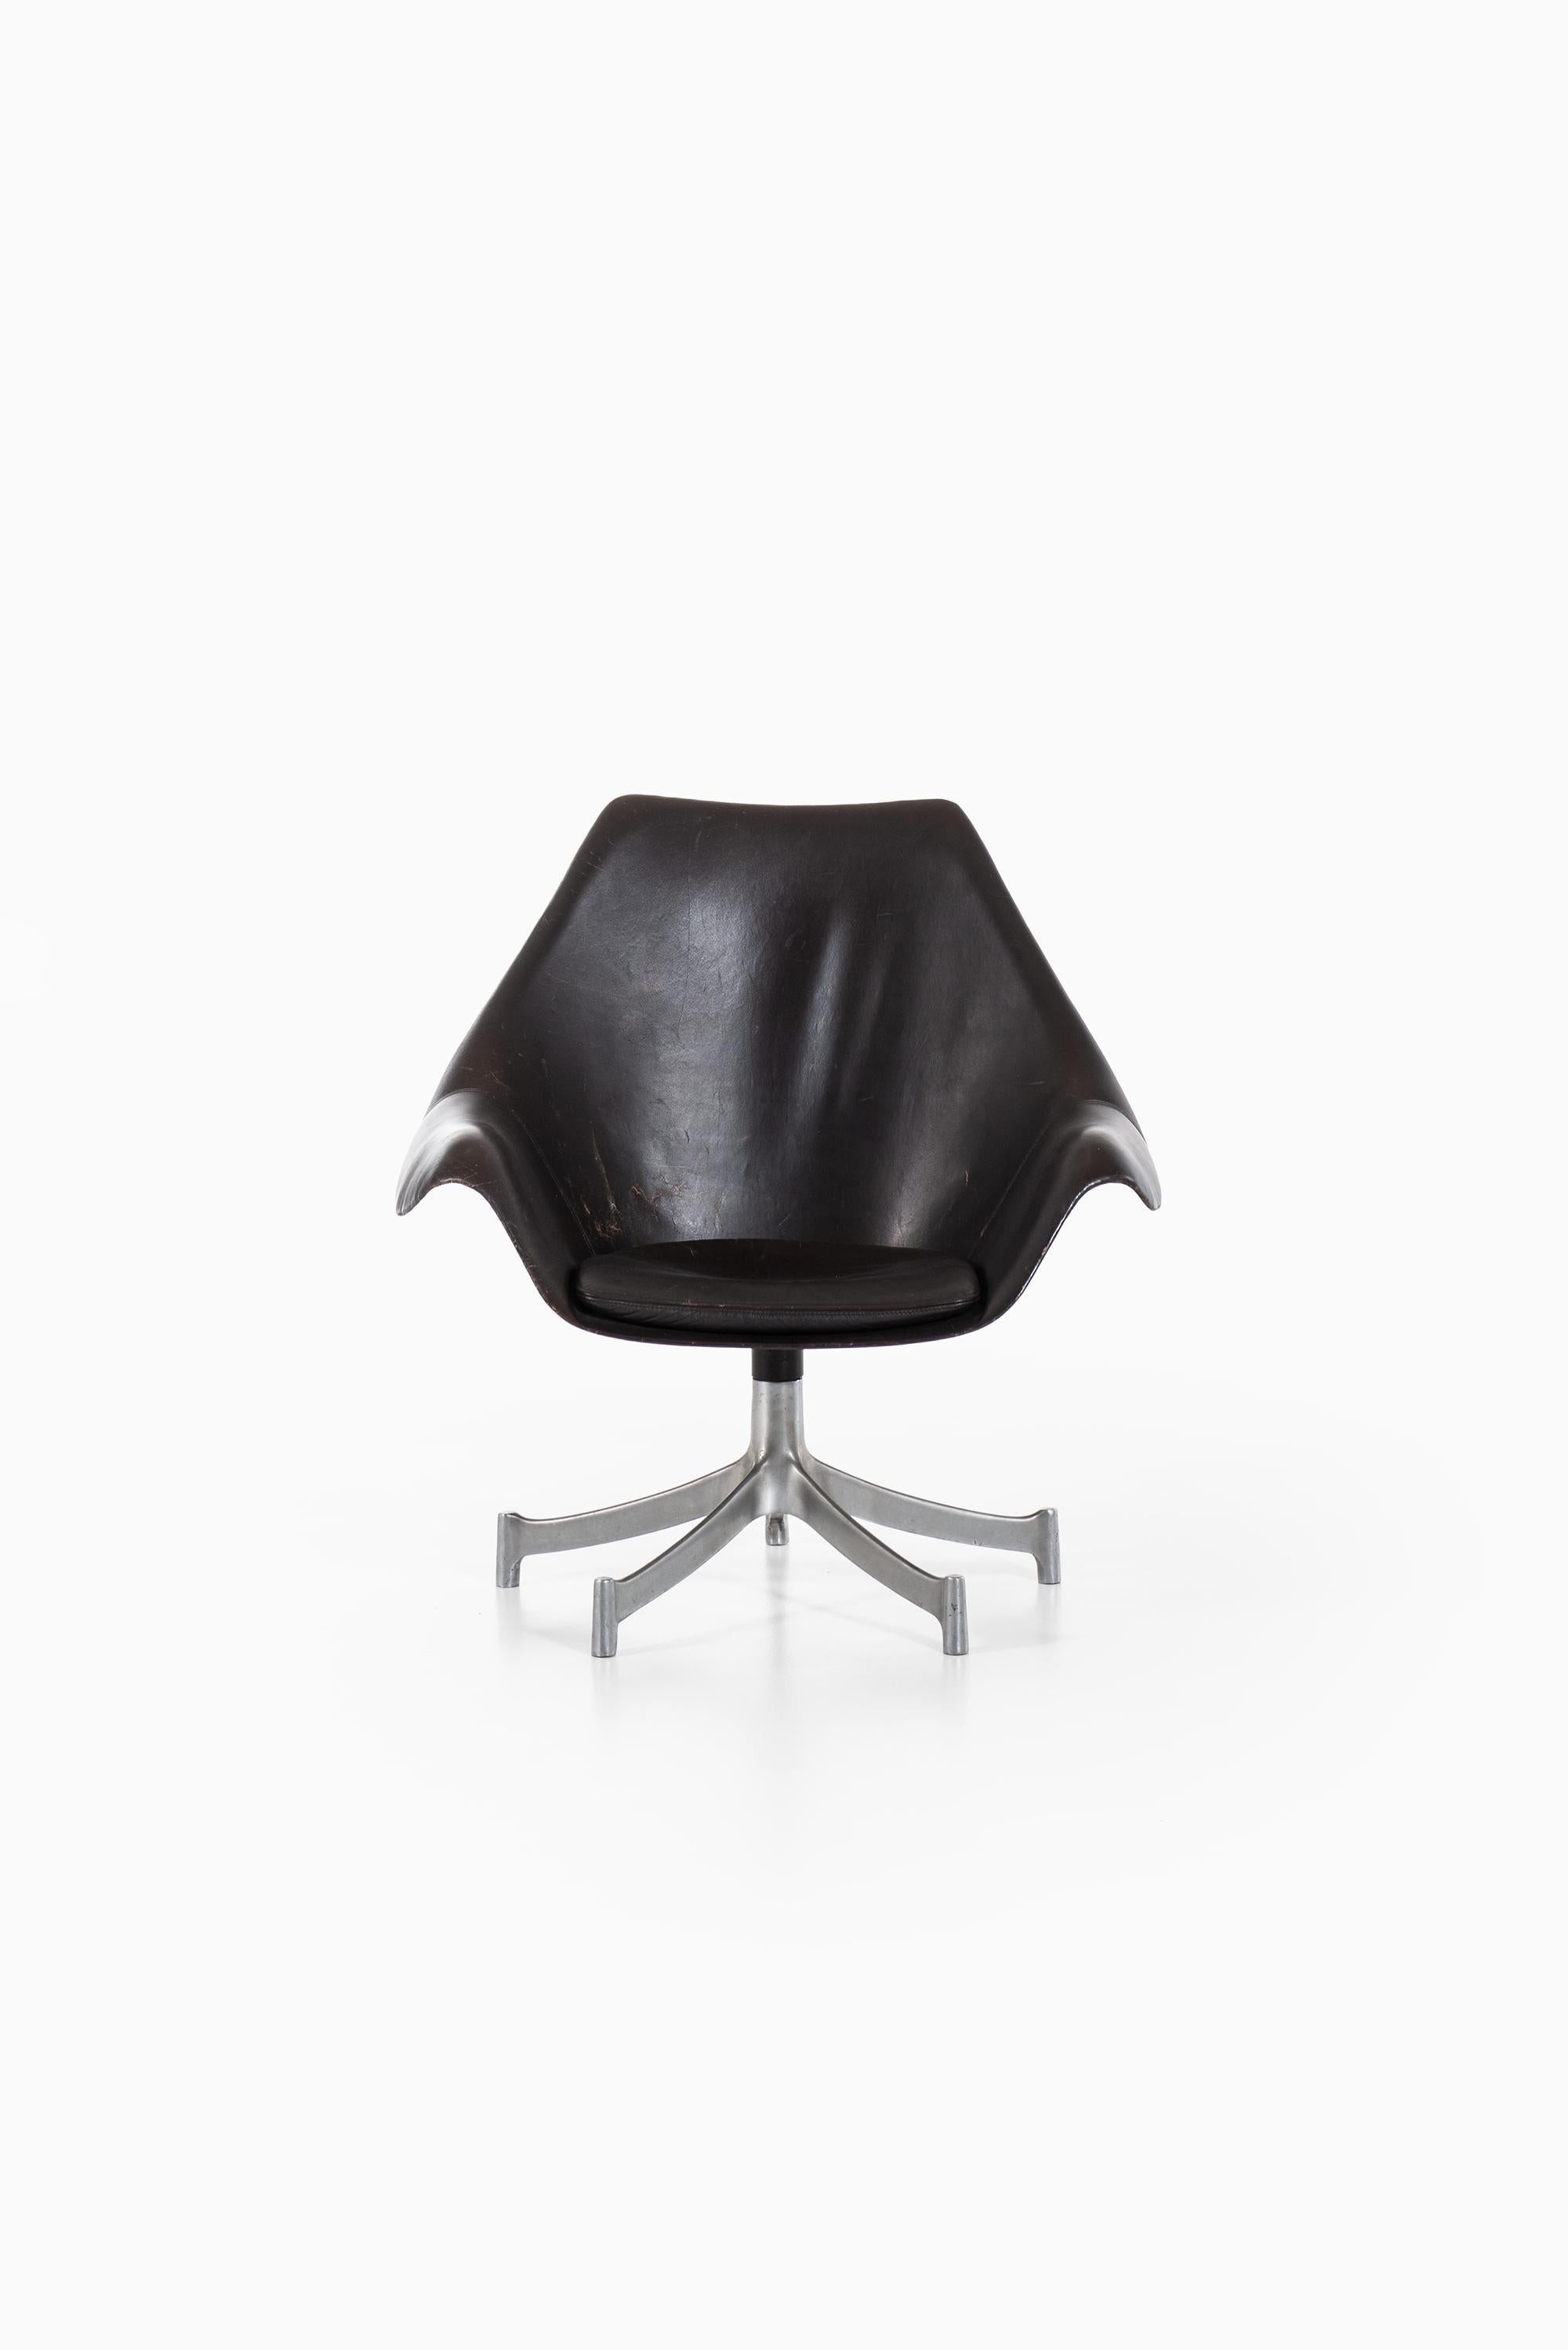 Sehr seltener Sessel, entworfen von Jørgen Lund & Ole Larsen. Produziert von Bo-Ex in Dänemark.